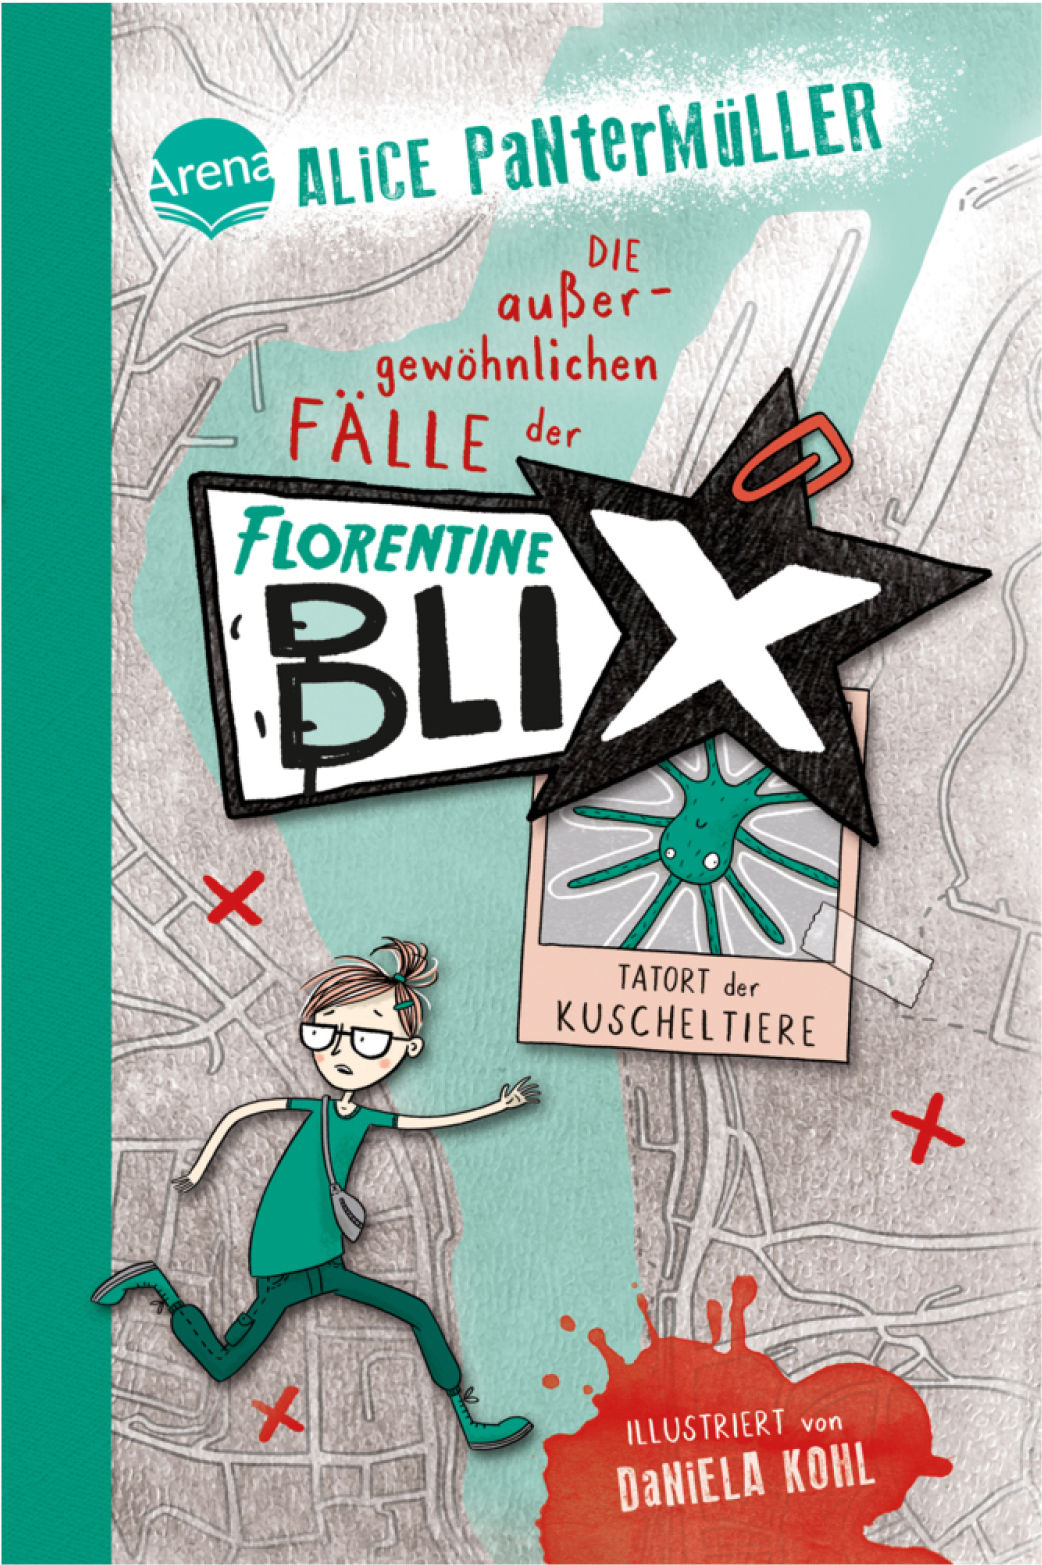 ALICE PANTERMÜLLER: Die außergewöhnlichen Fälle der Florentine Blix